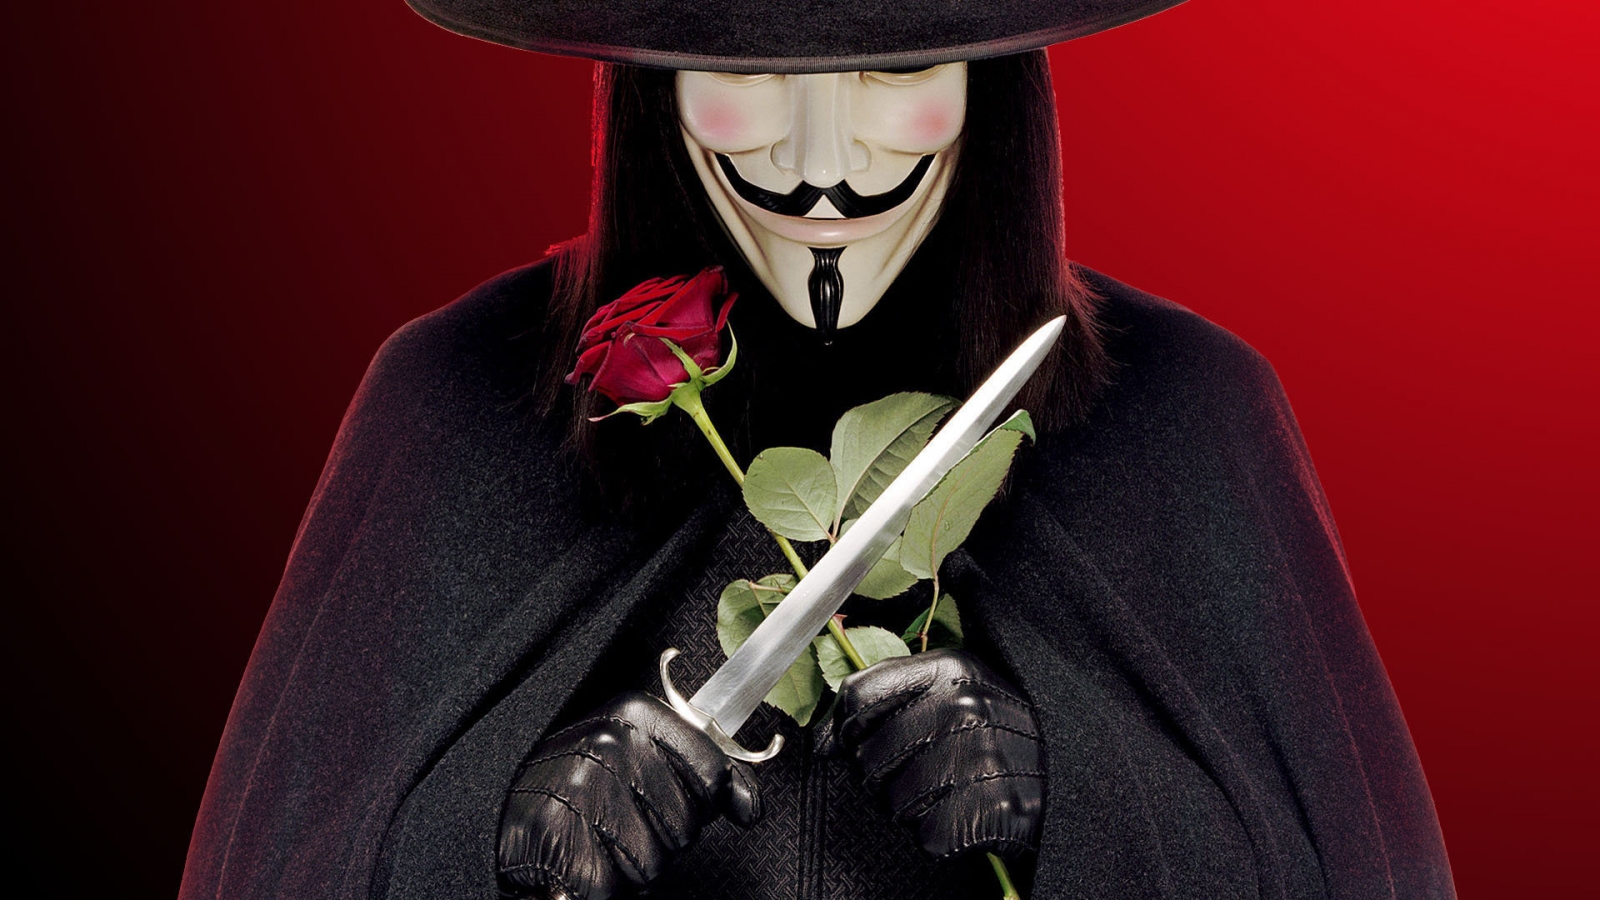 V for Vendetta Character for 1600 x 900 HDTV resolution